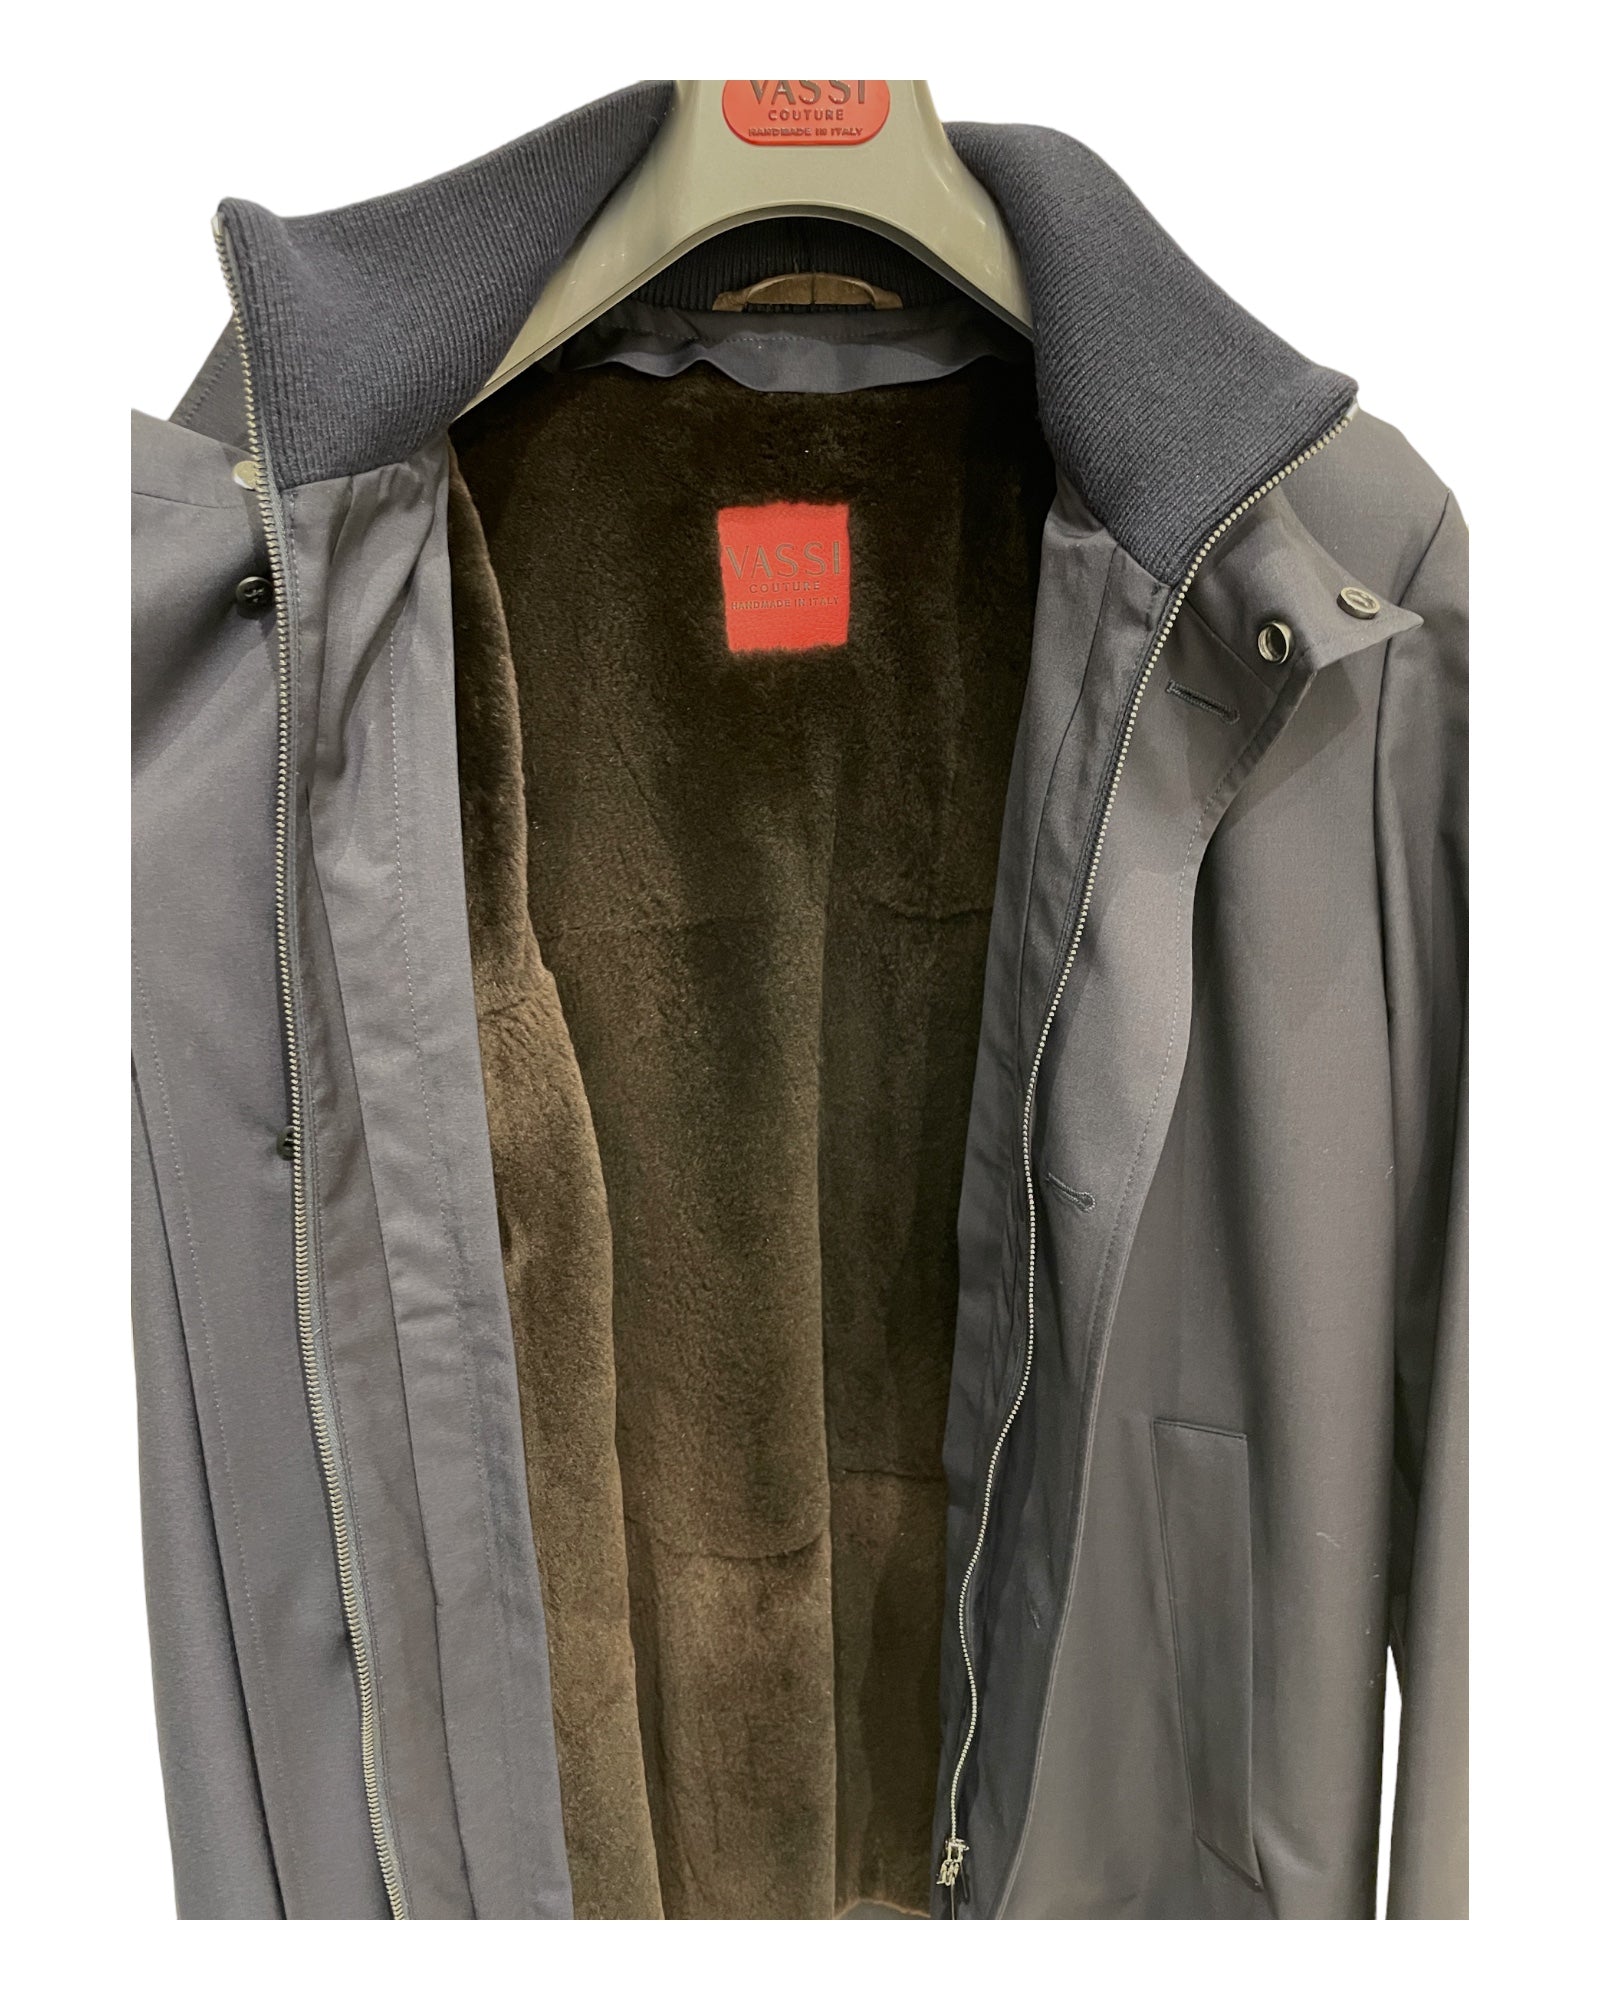 Loro Piana Storm System 3/4 coat with nutria lining- navy, interior